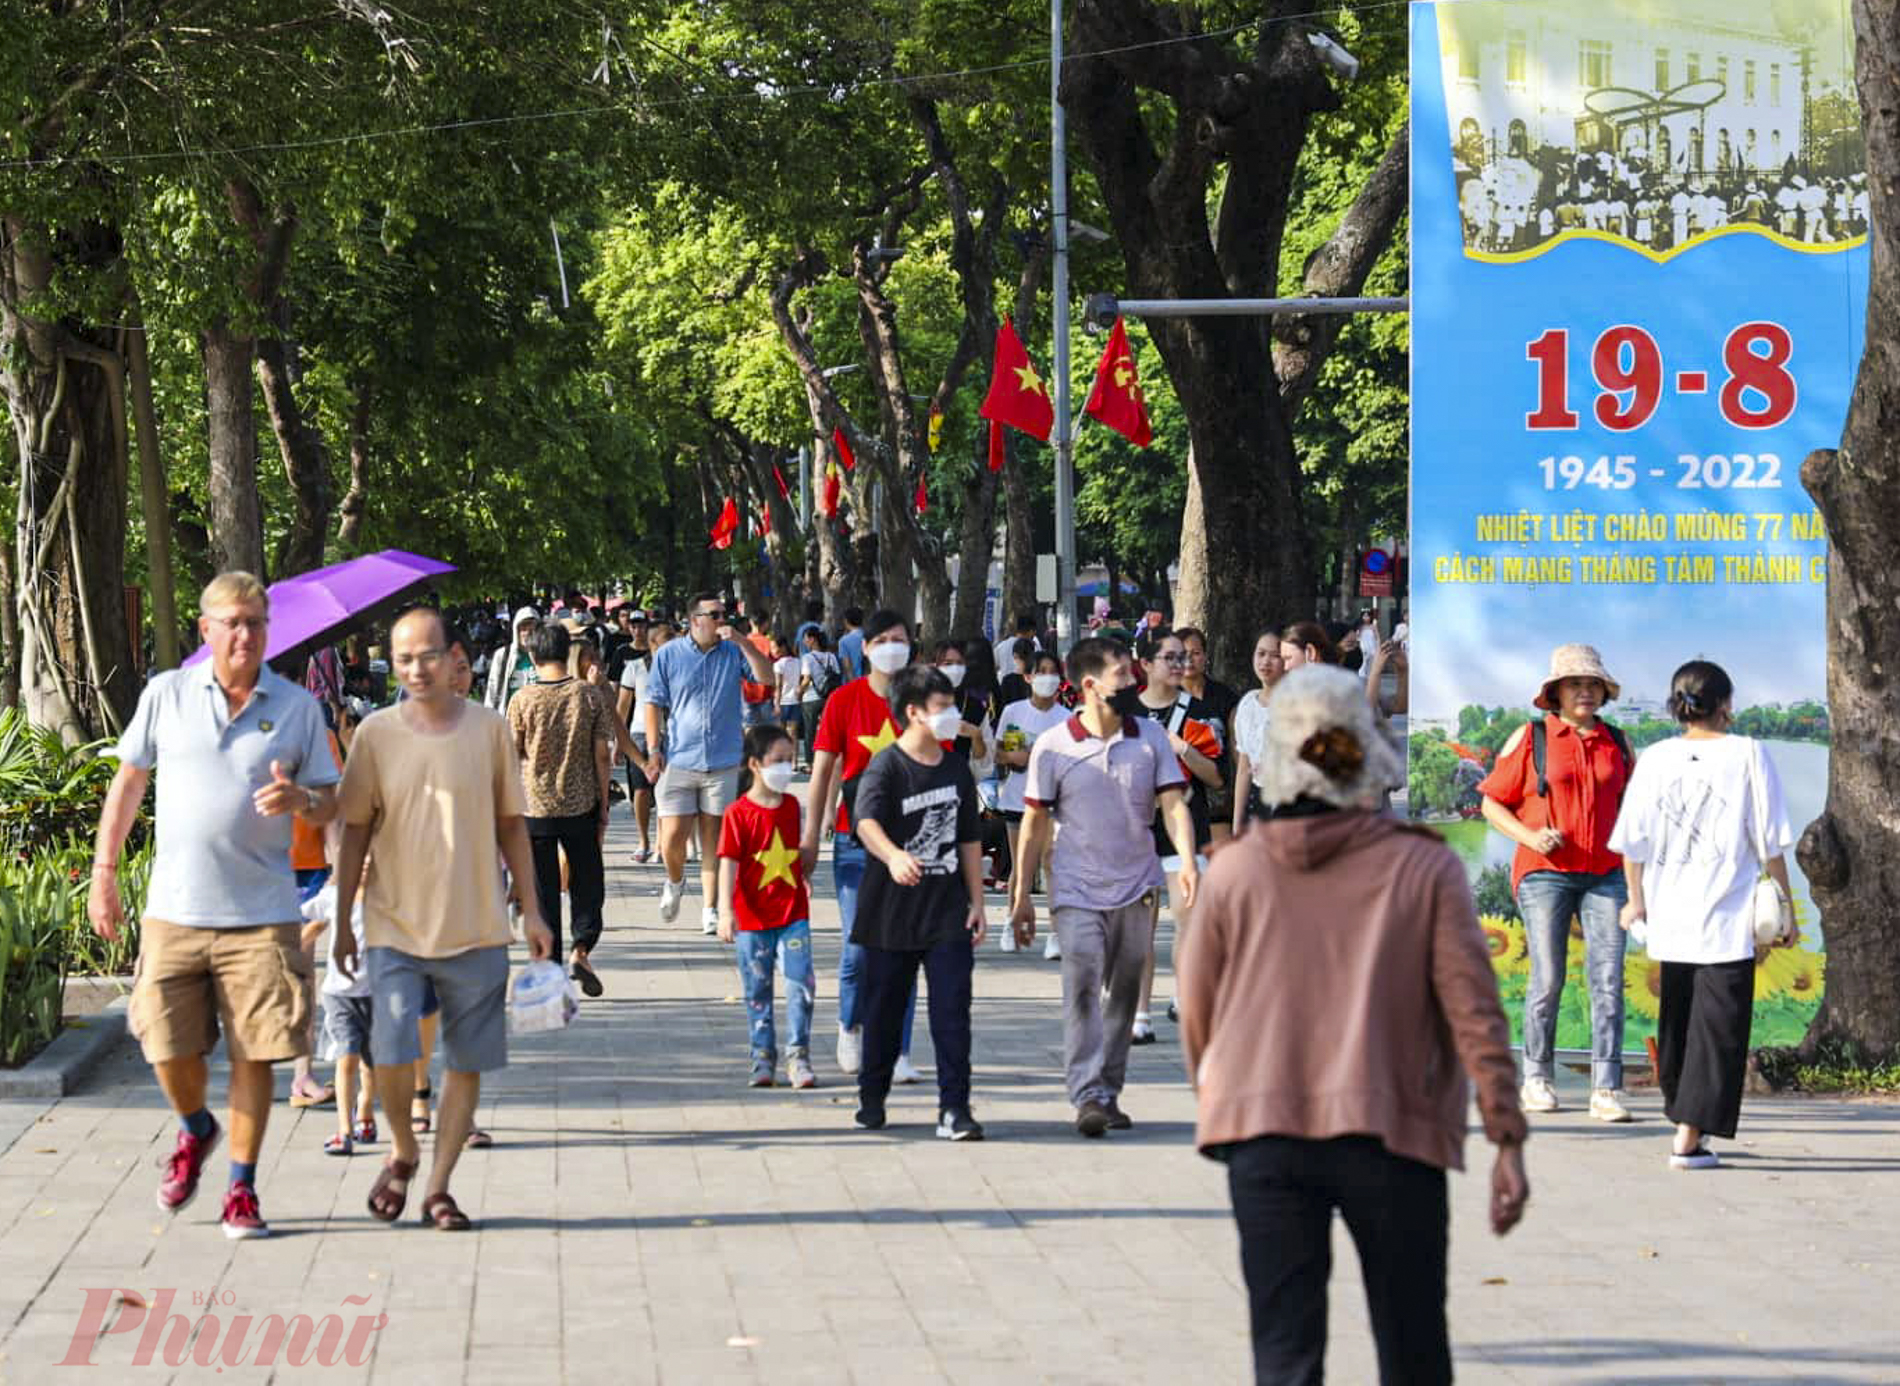 Khu vực phố đi bộ xung quanh Hồ Gươm là địa điểm được nhiều gia đình lựa chọn để đưa các bạn nhỏ đi xả hơi, thư giãn trong kỳ nghỉ lễ Giỗ tổ Hùng Vương năm 2022. 